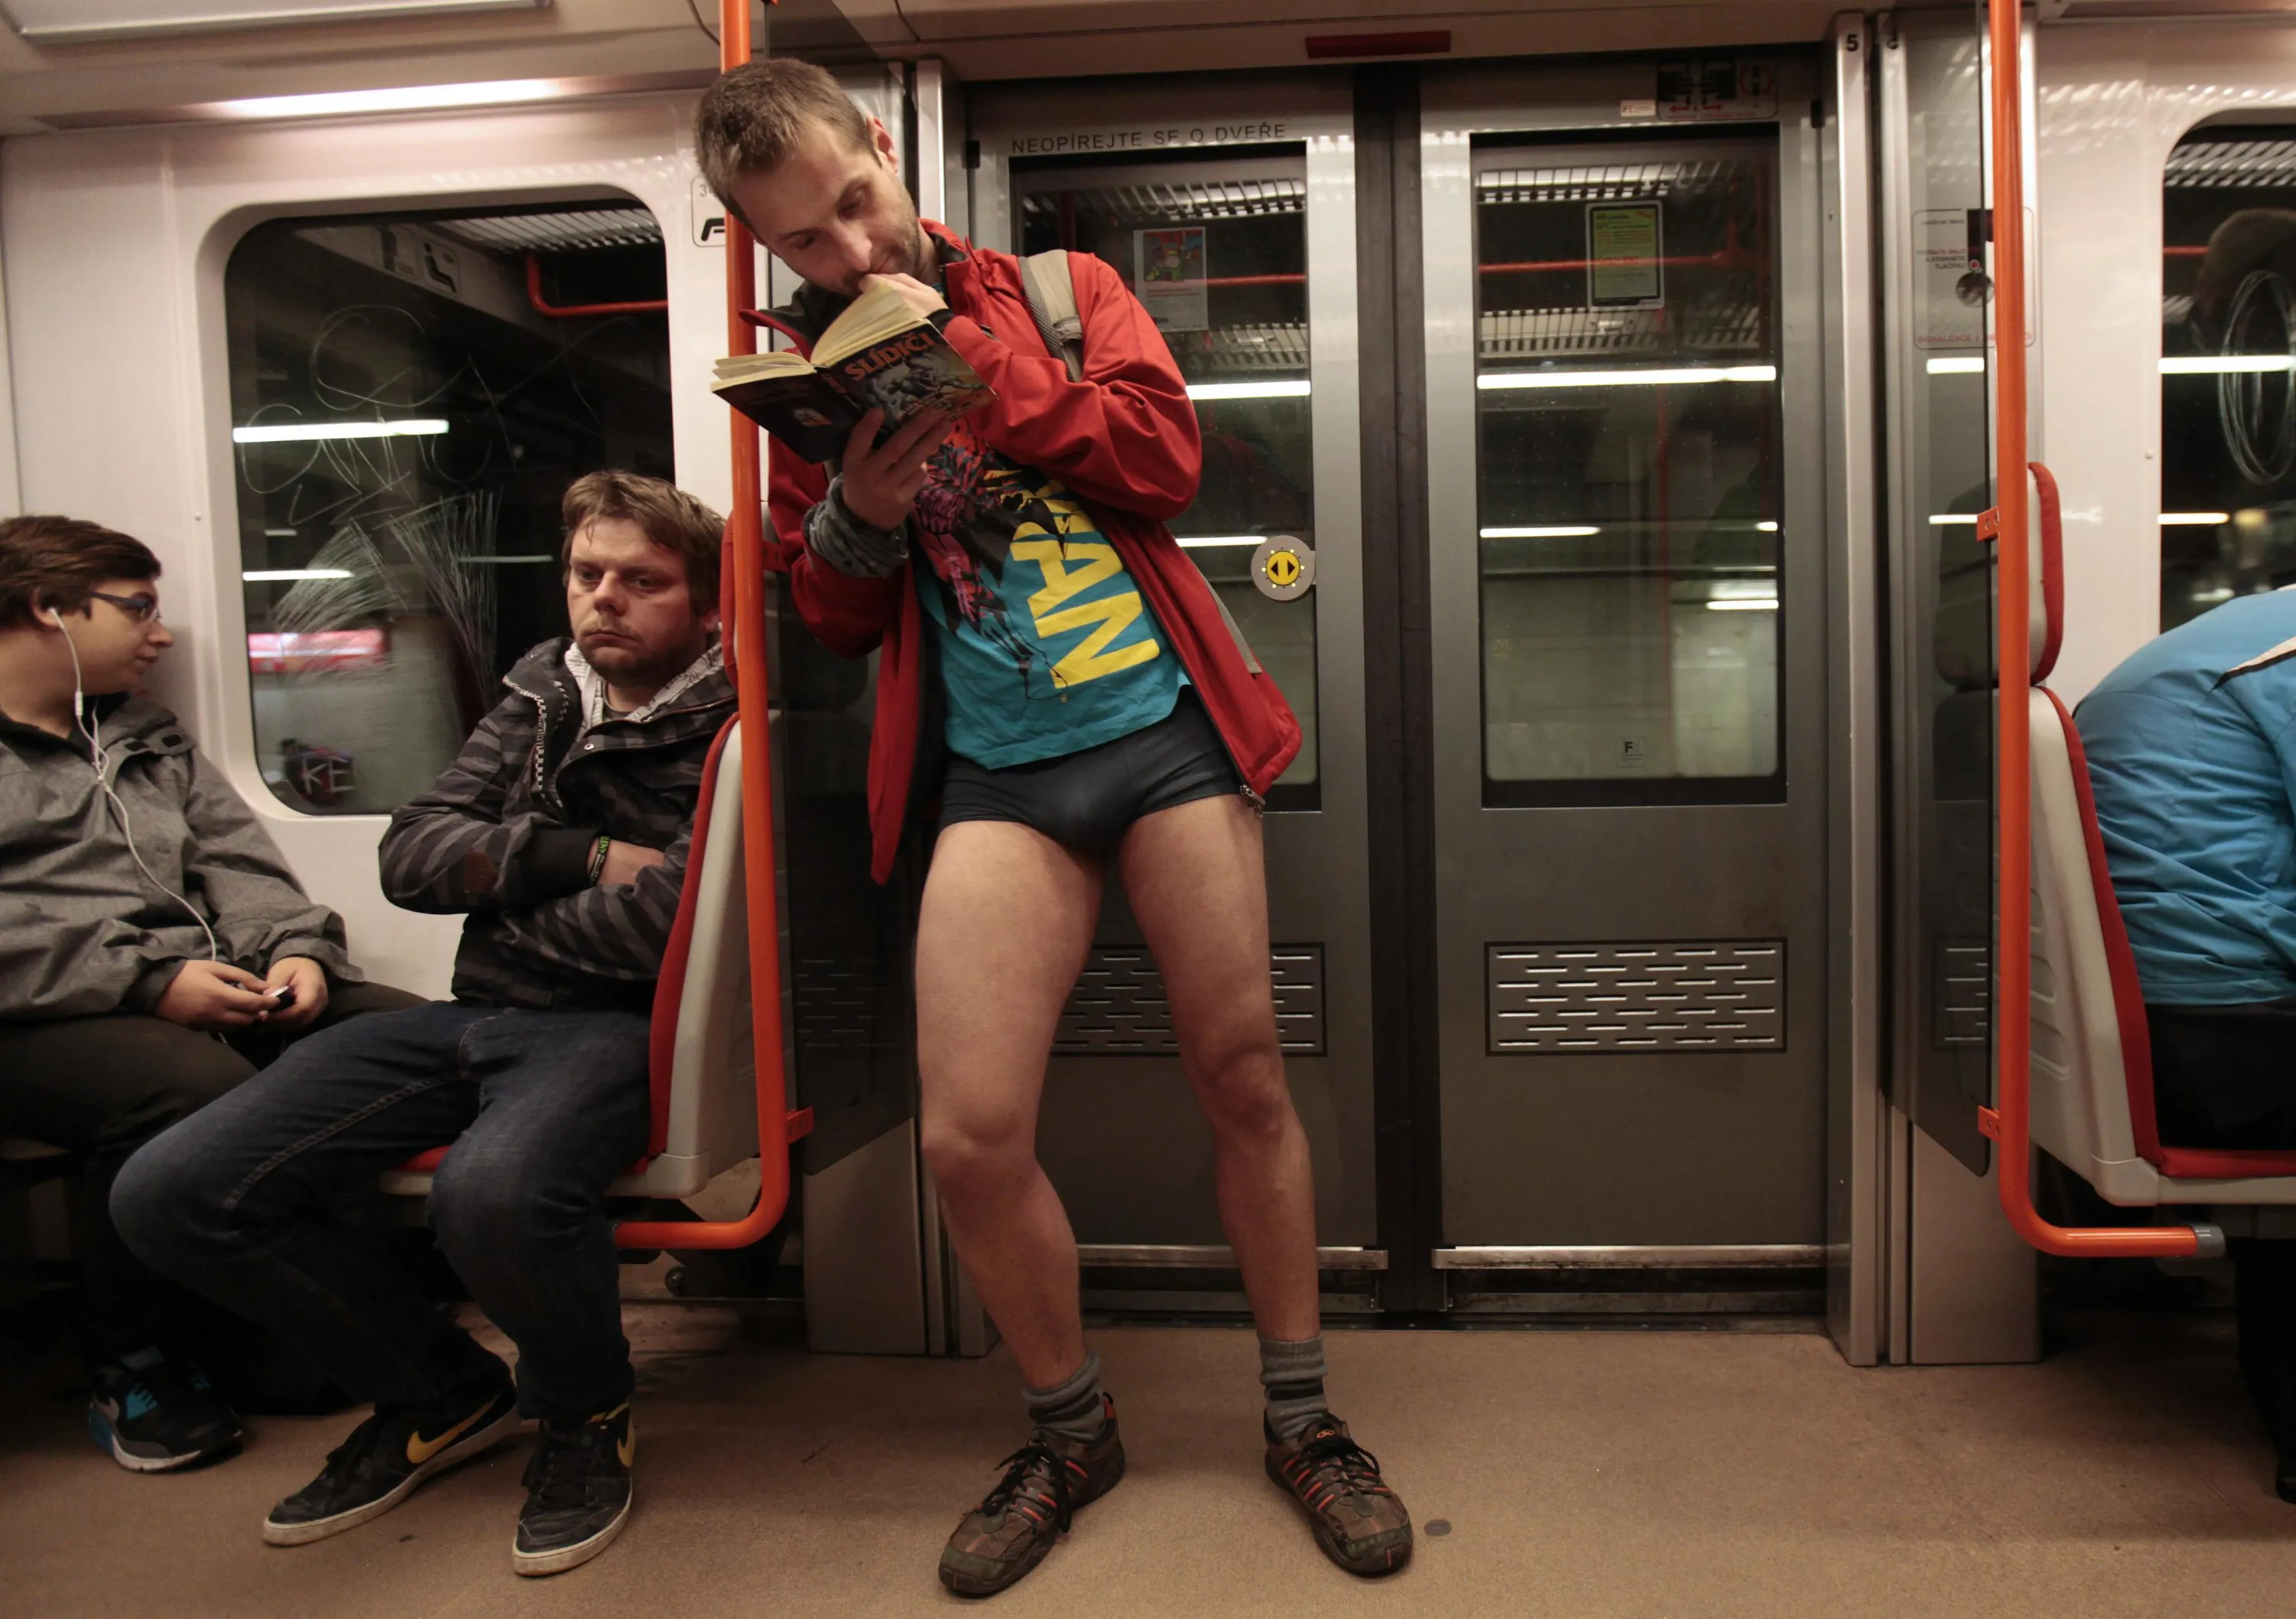 Цензура в реальной жизни. В метро без штанов. Мужчины в метро без штанов. Пацаны без штанов. Парень в метро.